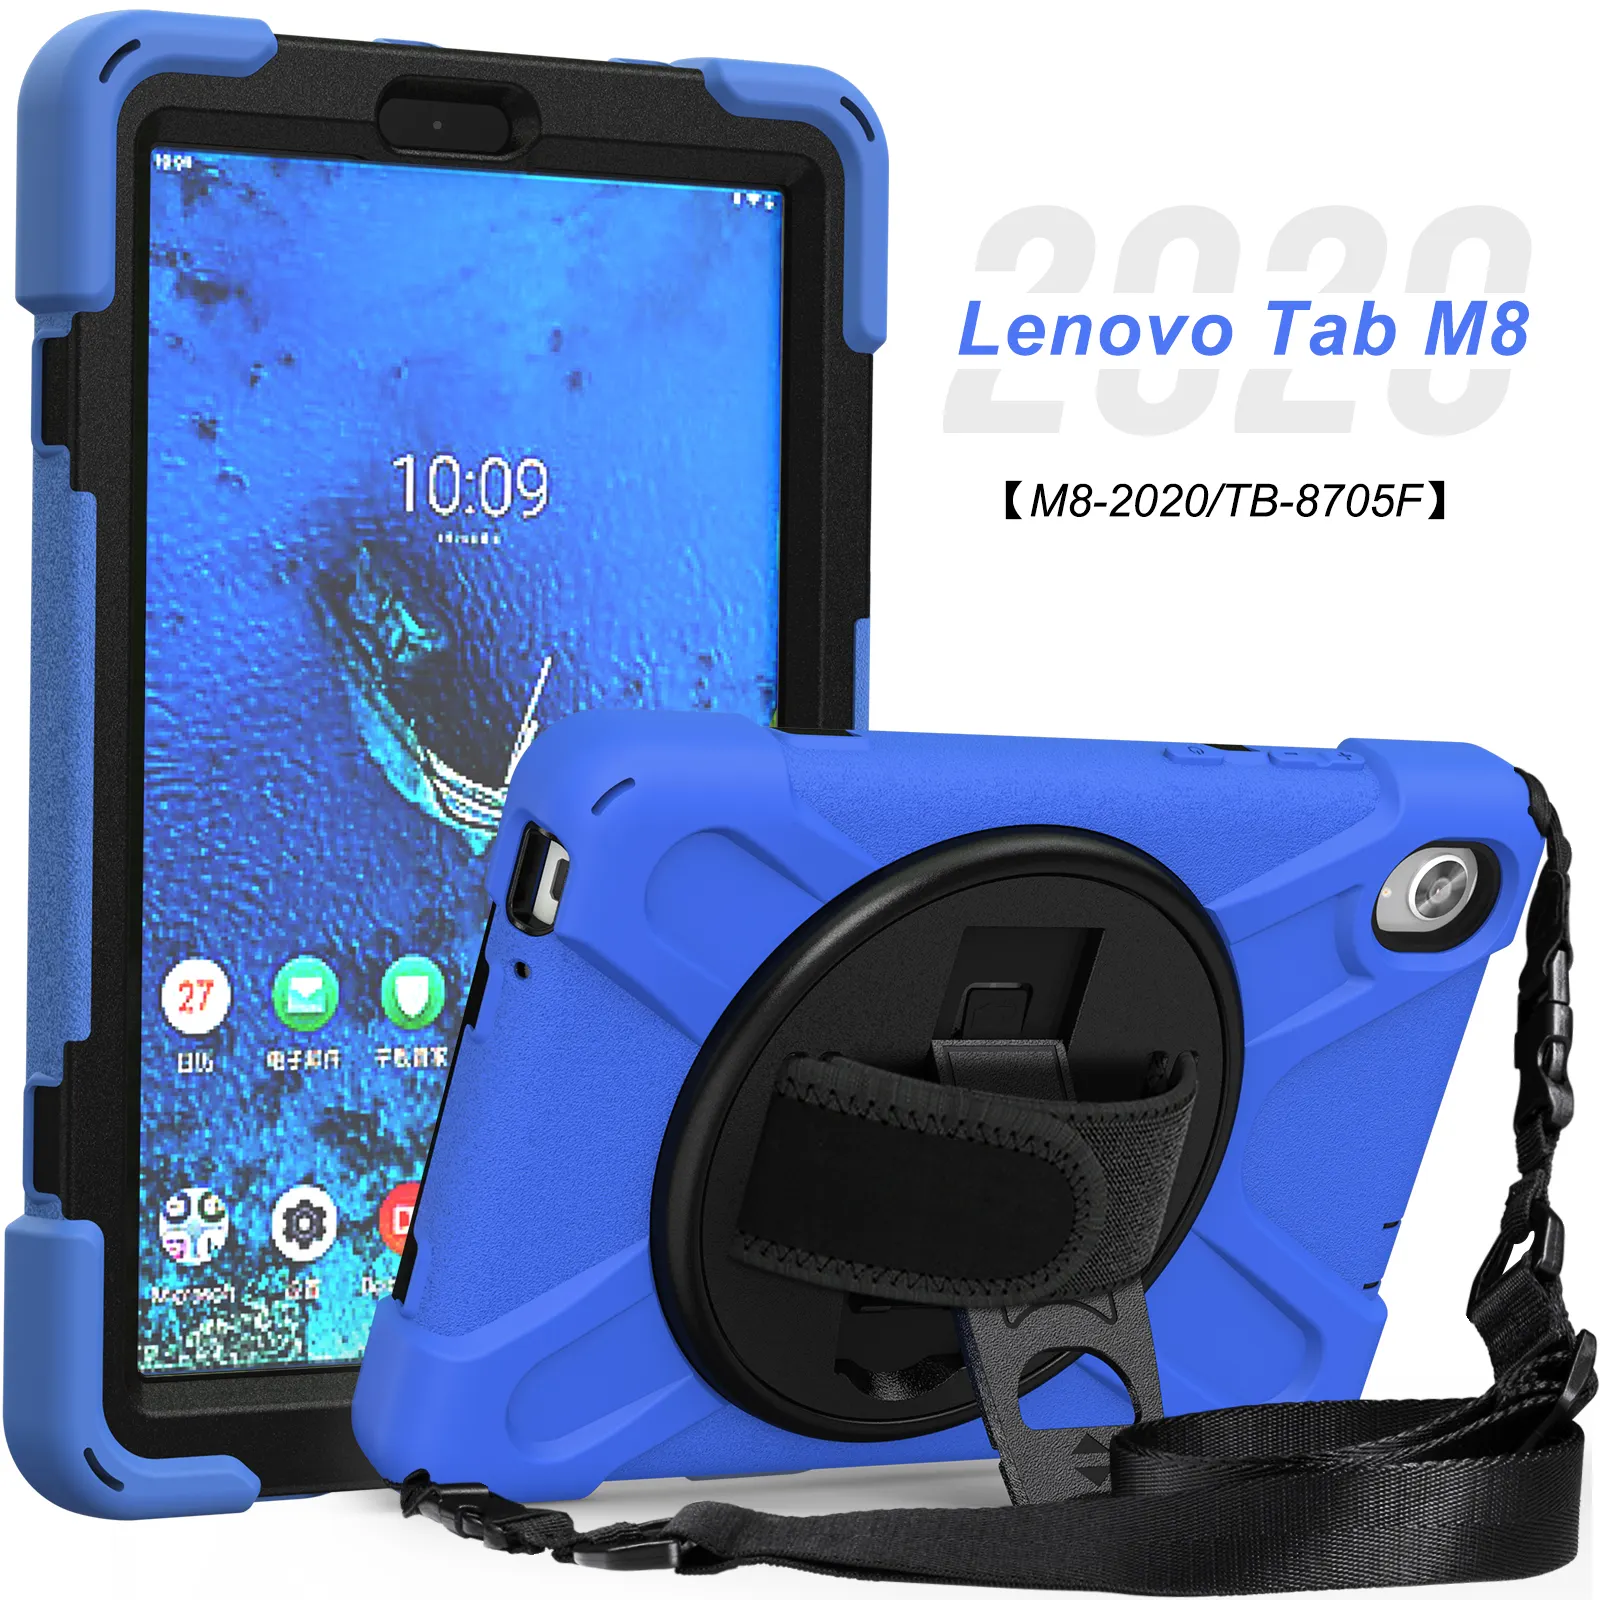 Fabriek Prijs Tablet Case Voor Lenovo Tab M8 8Inch 2020 Tb-8705f 8705n Met 360 Roterende Kickstand En Handband Schouderband